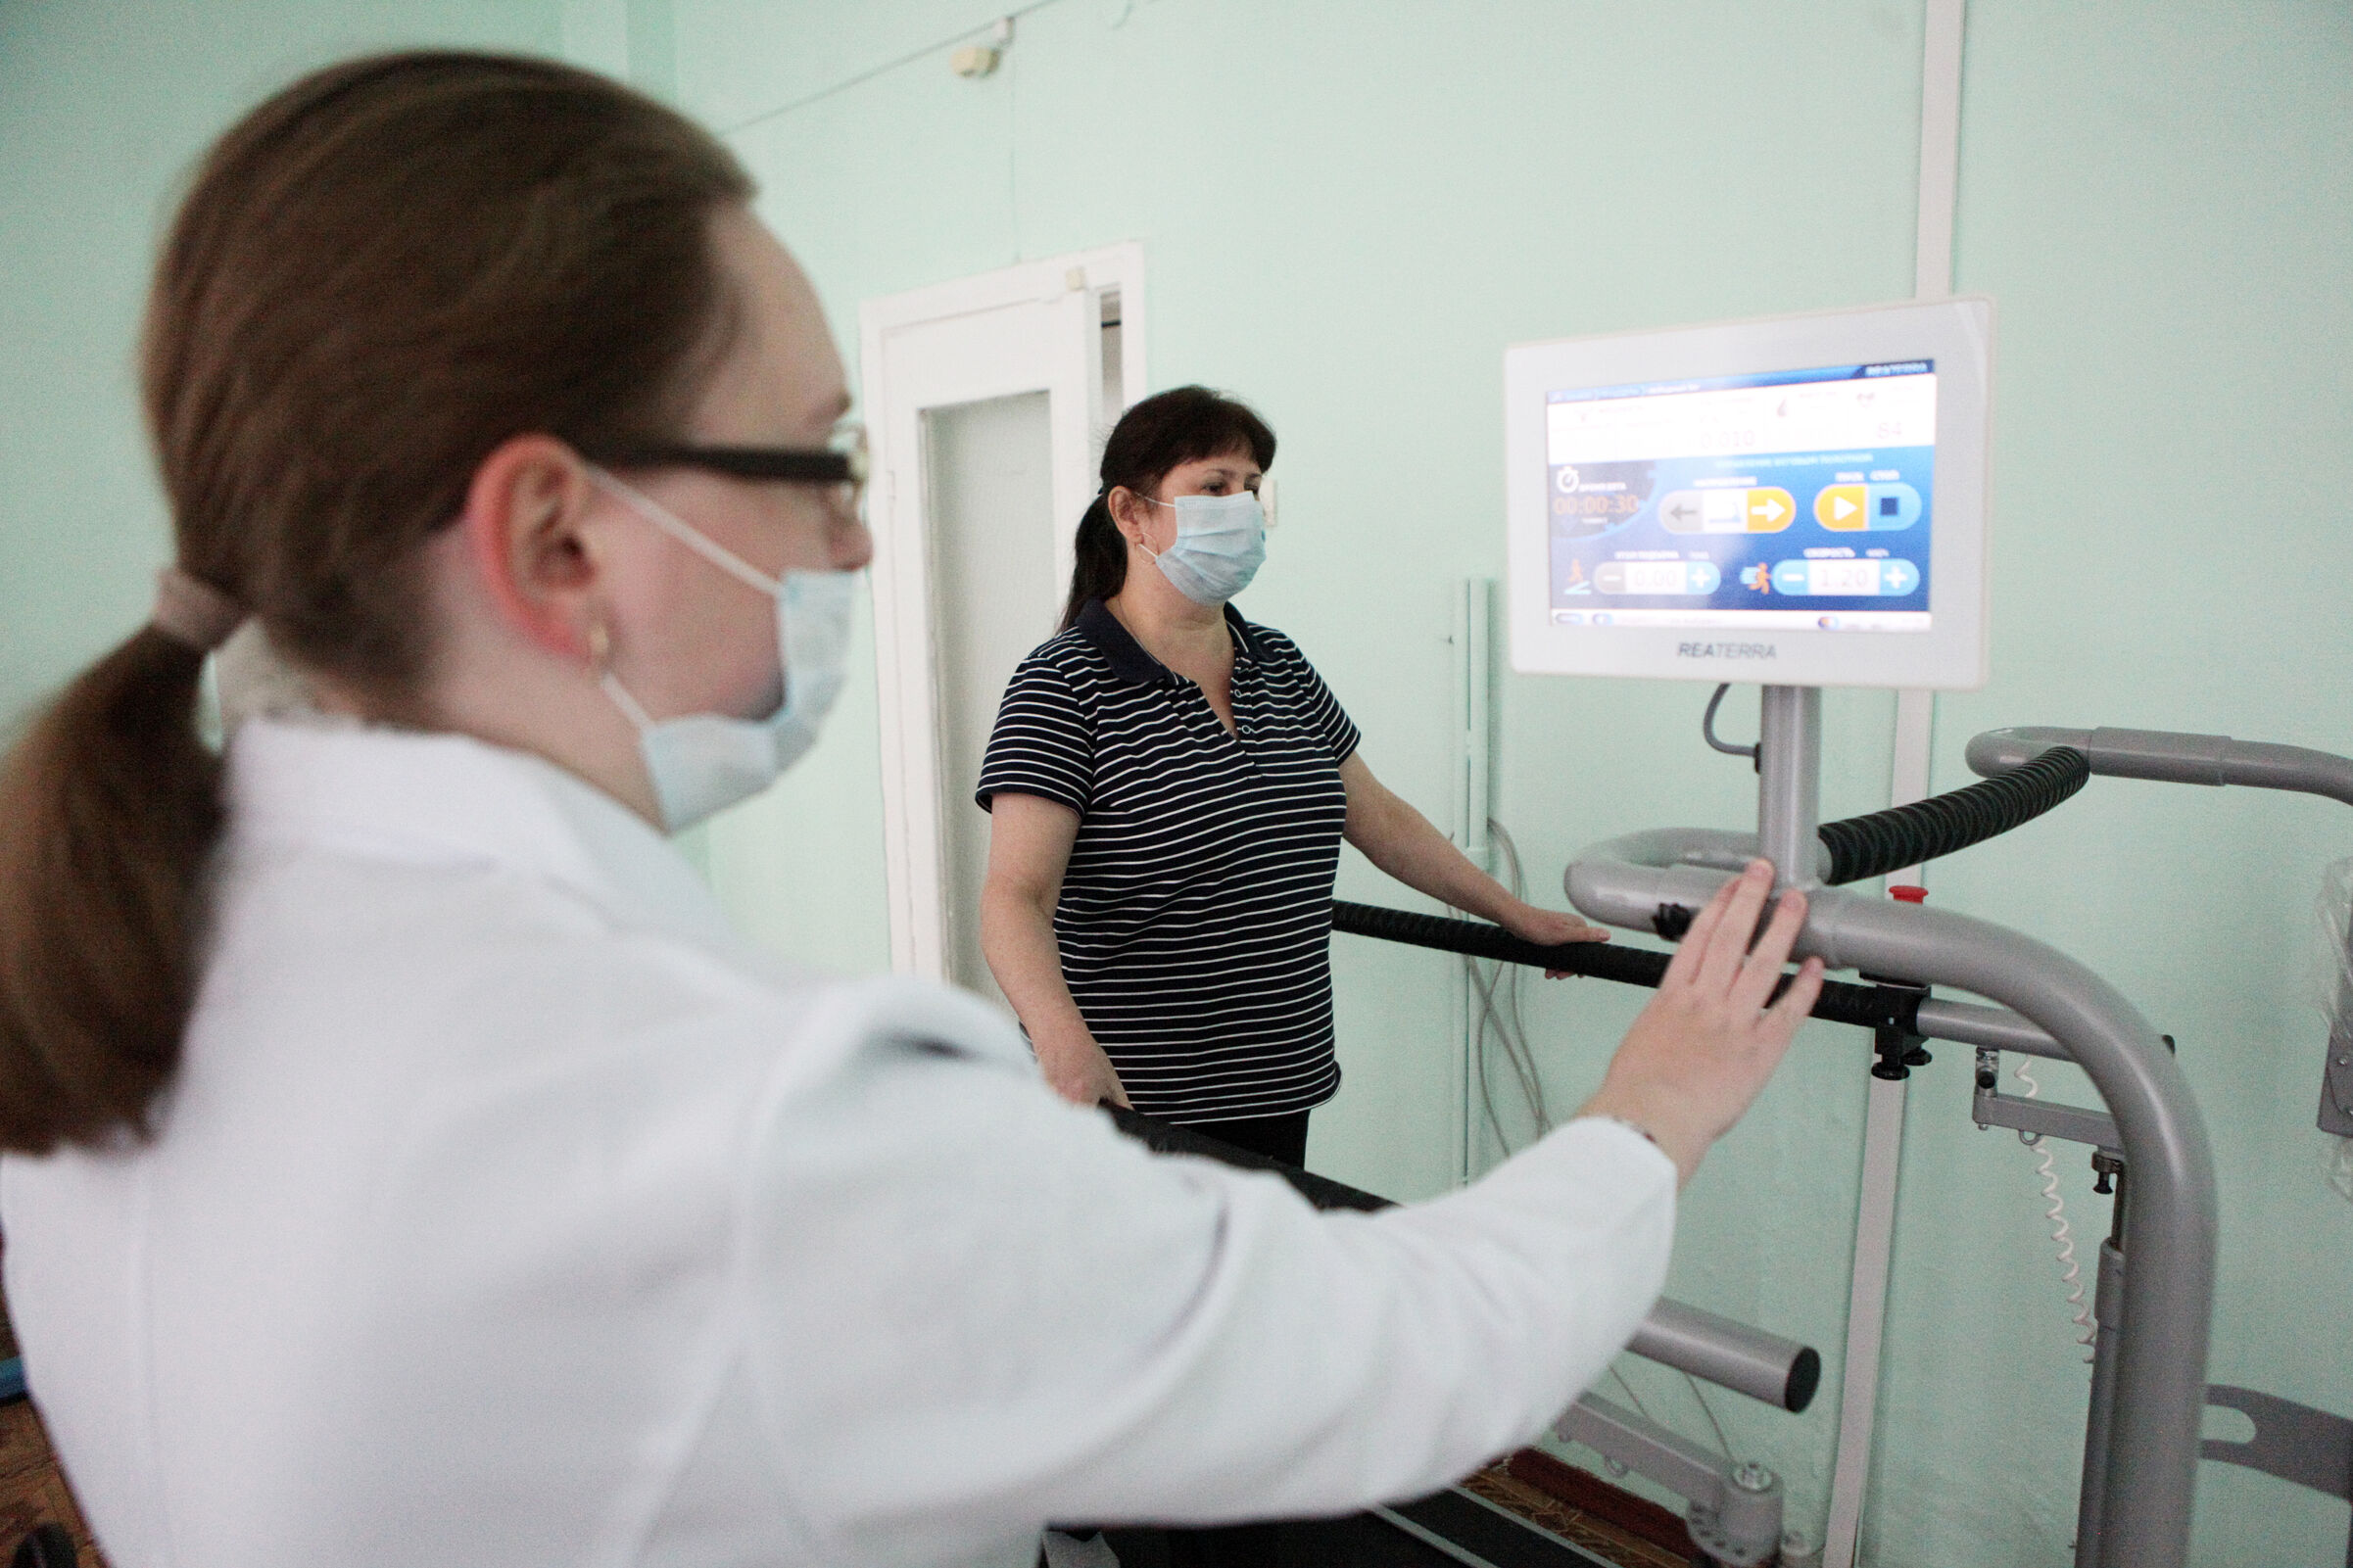 Альфа-спа-капсула и аппарат для LPG-терапии: в ярославские больницы поступает новое оборудование